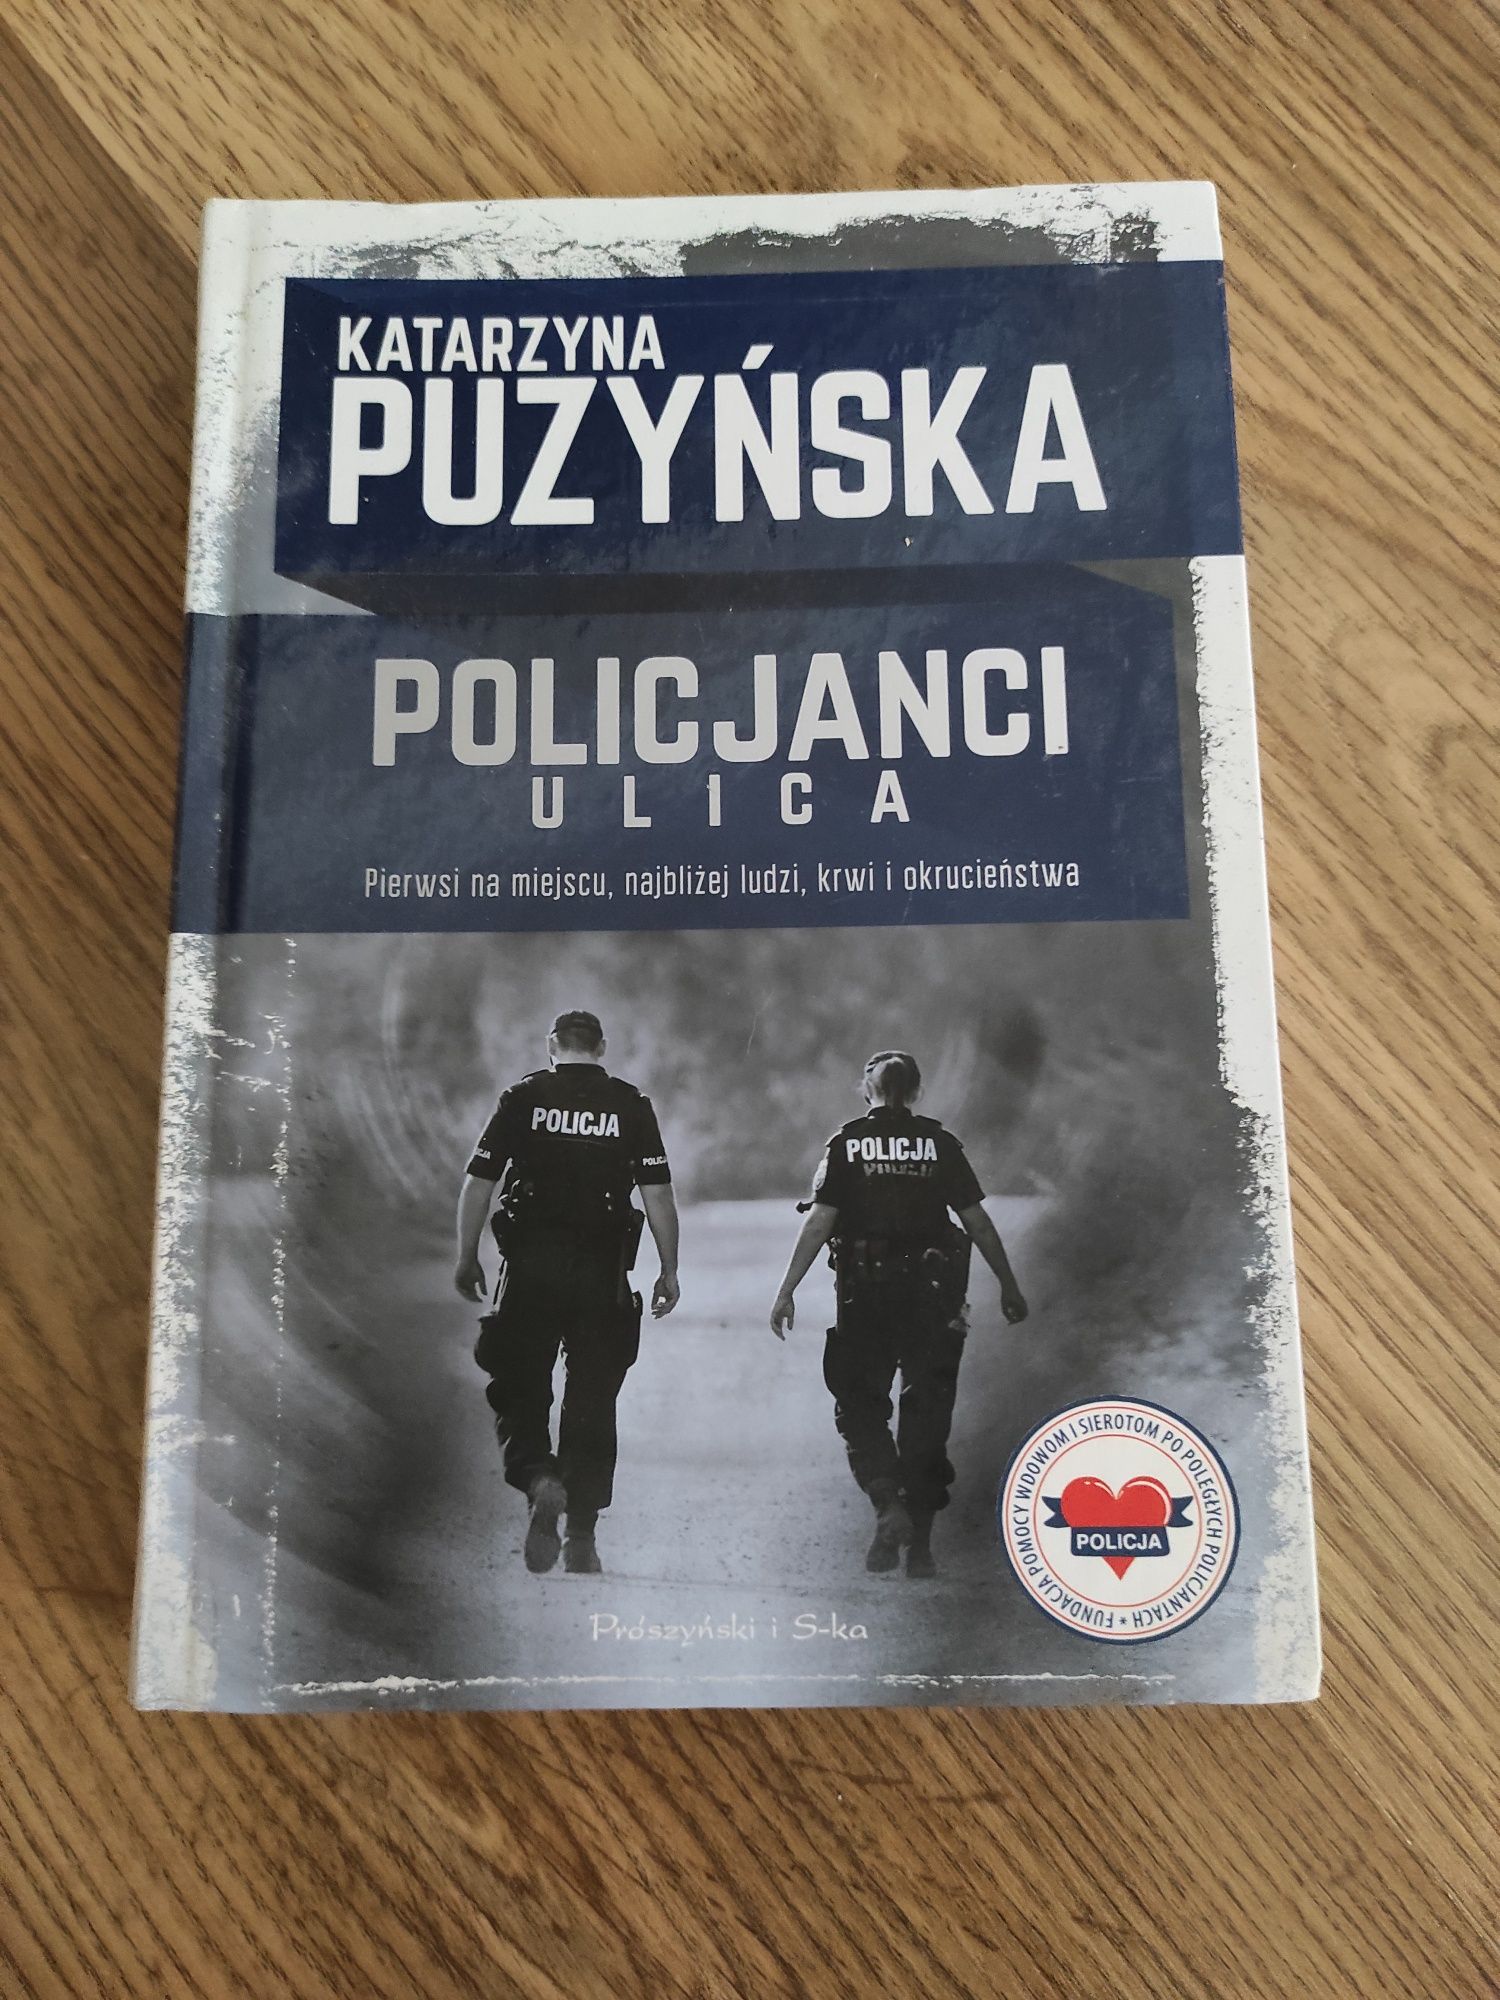 Katarzyna Puzyńska "Policjanci Ulica"